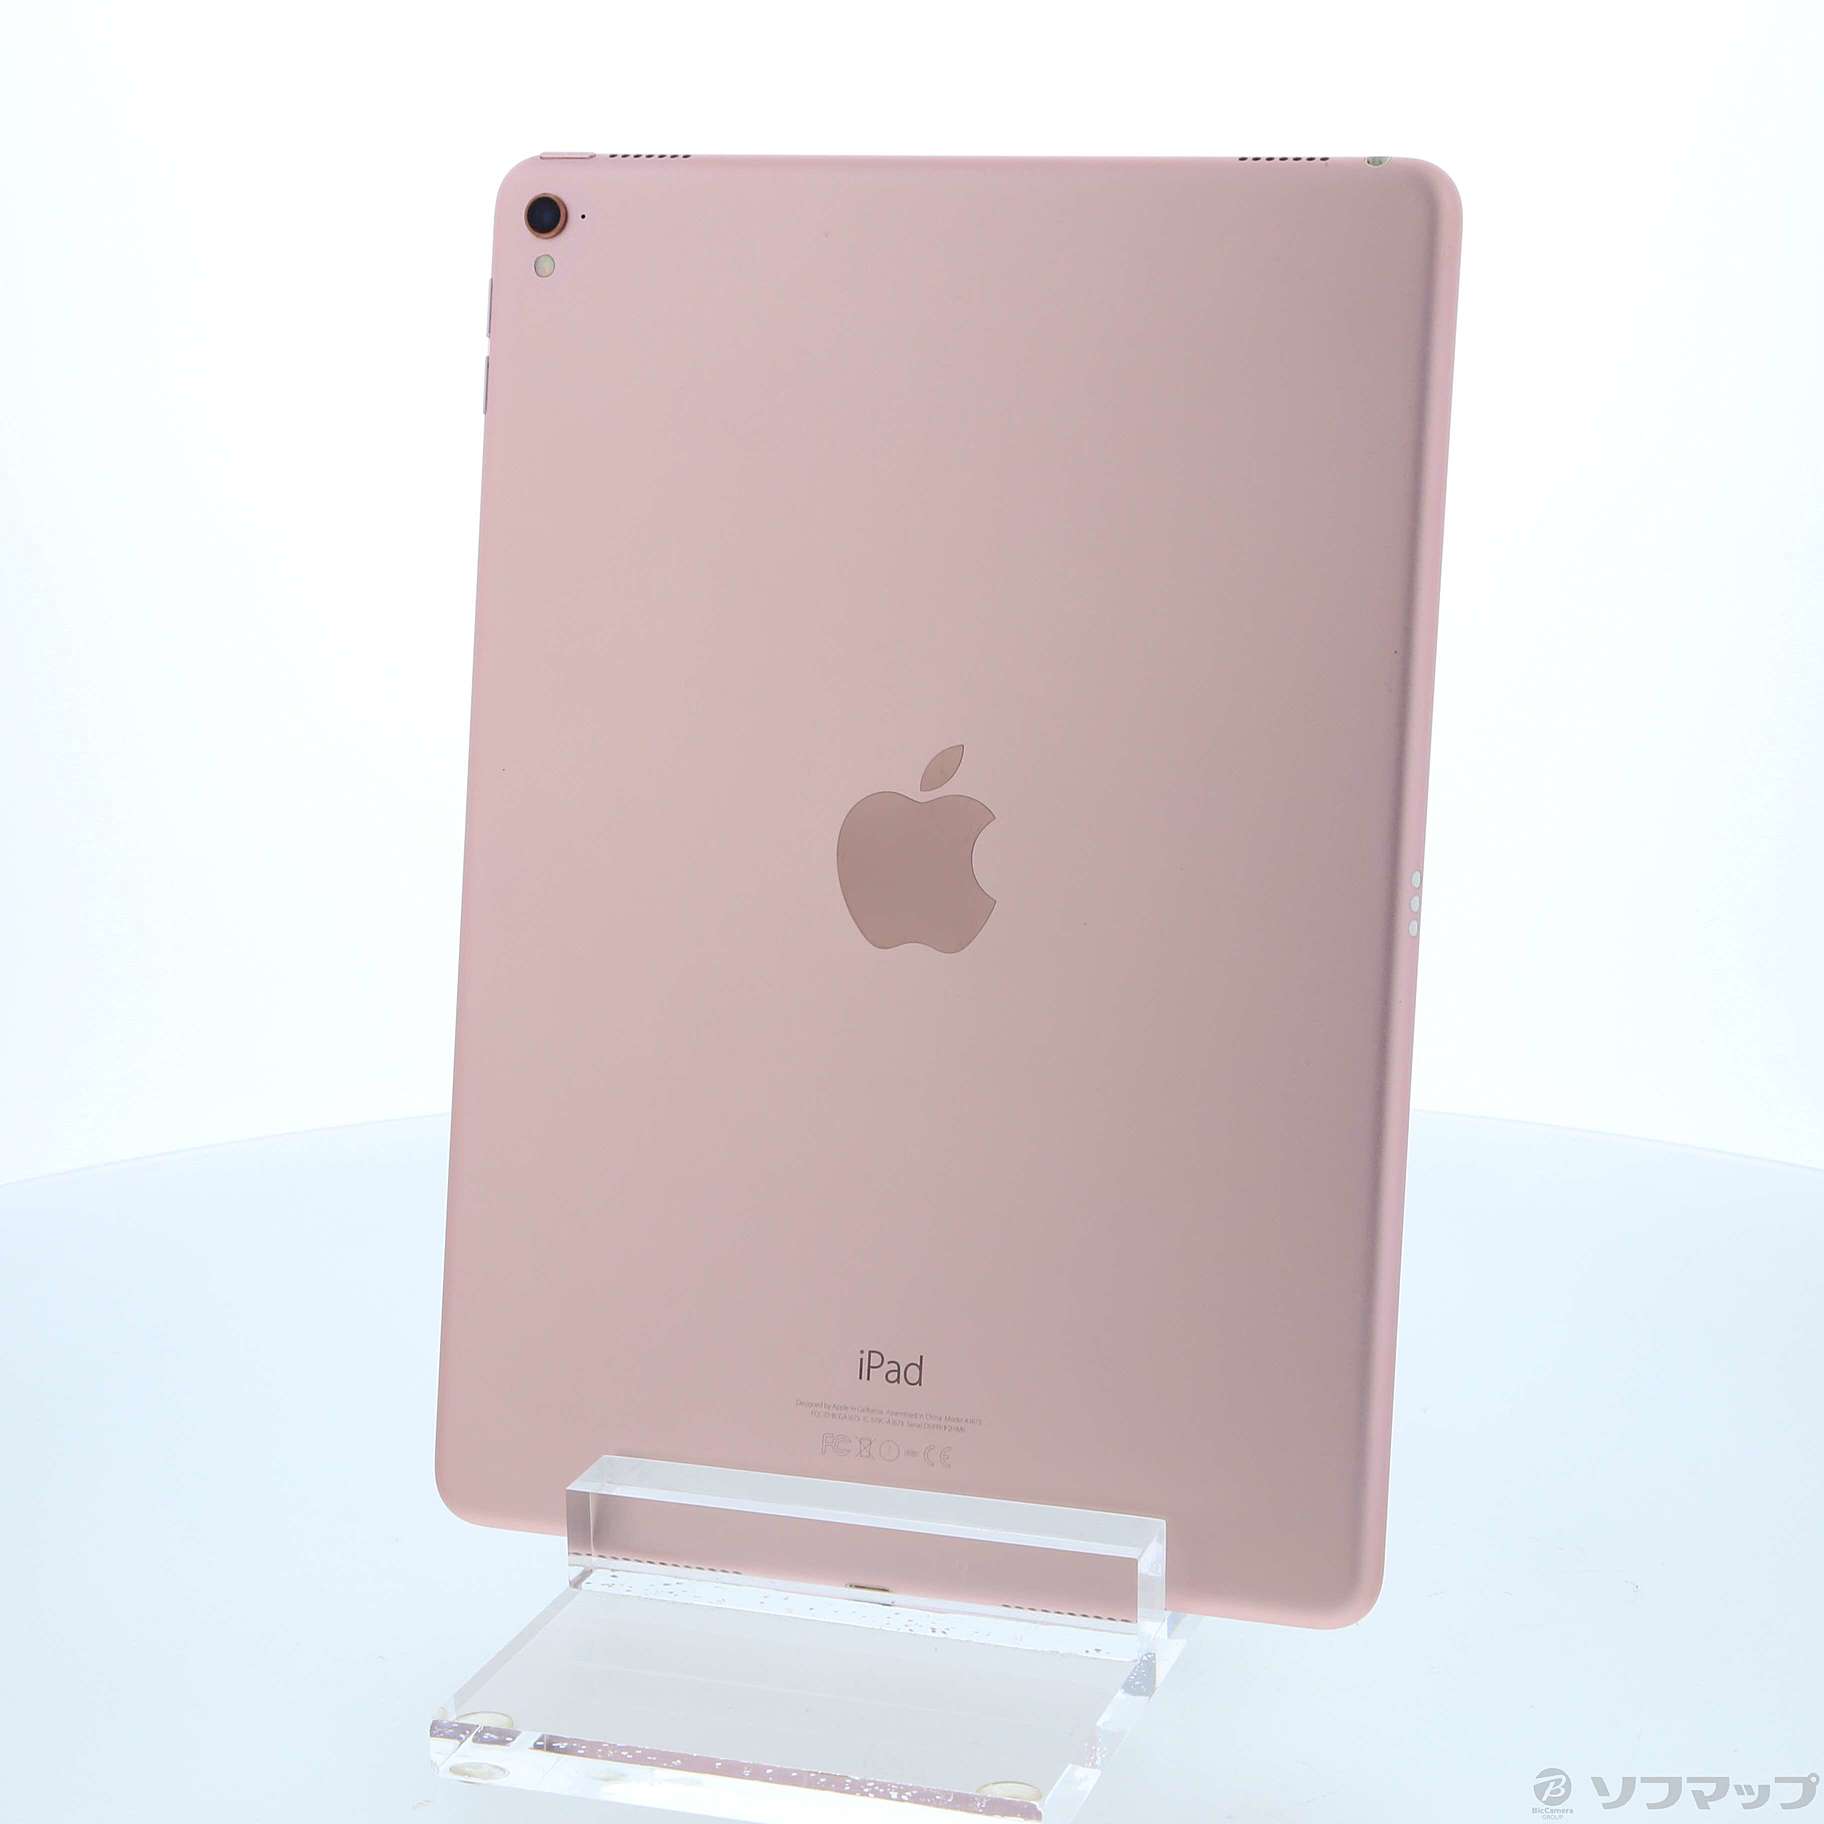 (中古)Apple iPad Pro 9.7インチ 32GB ローズゴールド MM172J/A Wi-Fi(377-ud)